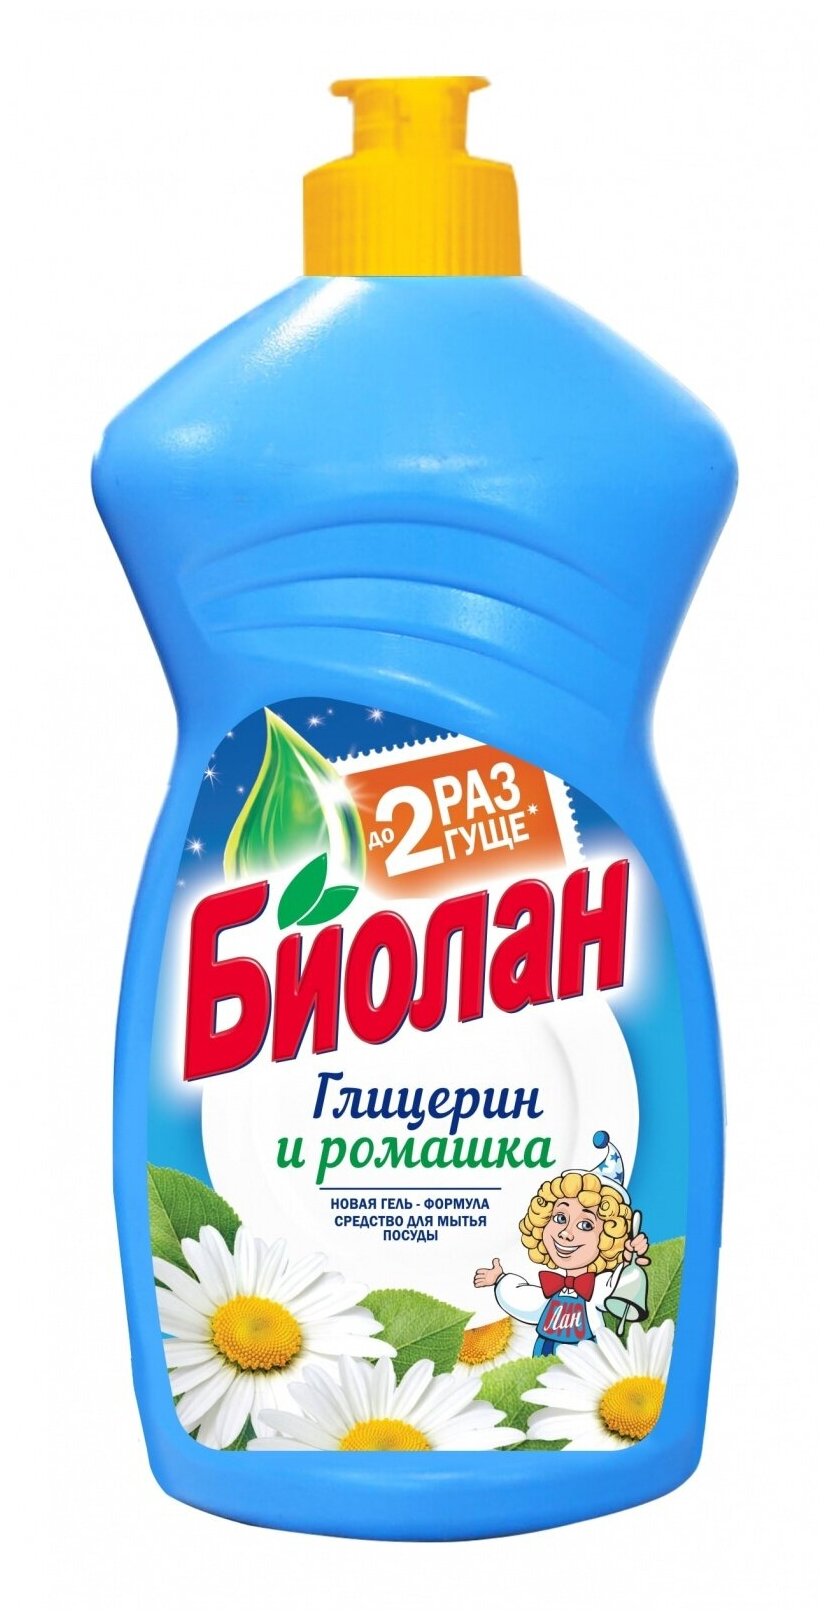 Средство для мытья посуды Биолан Глицирин и Ромашка, 450 гр. 4239834